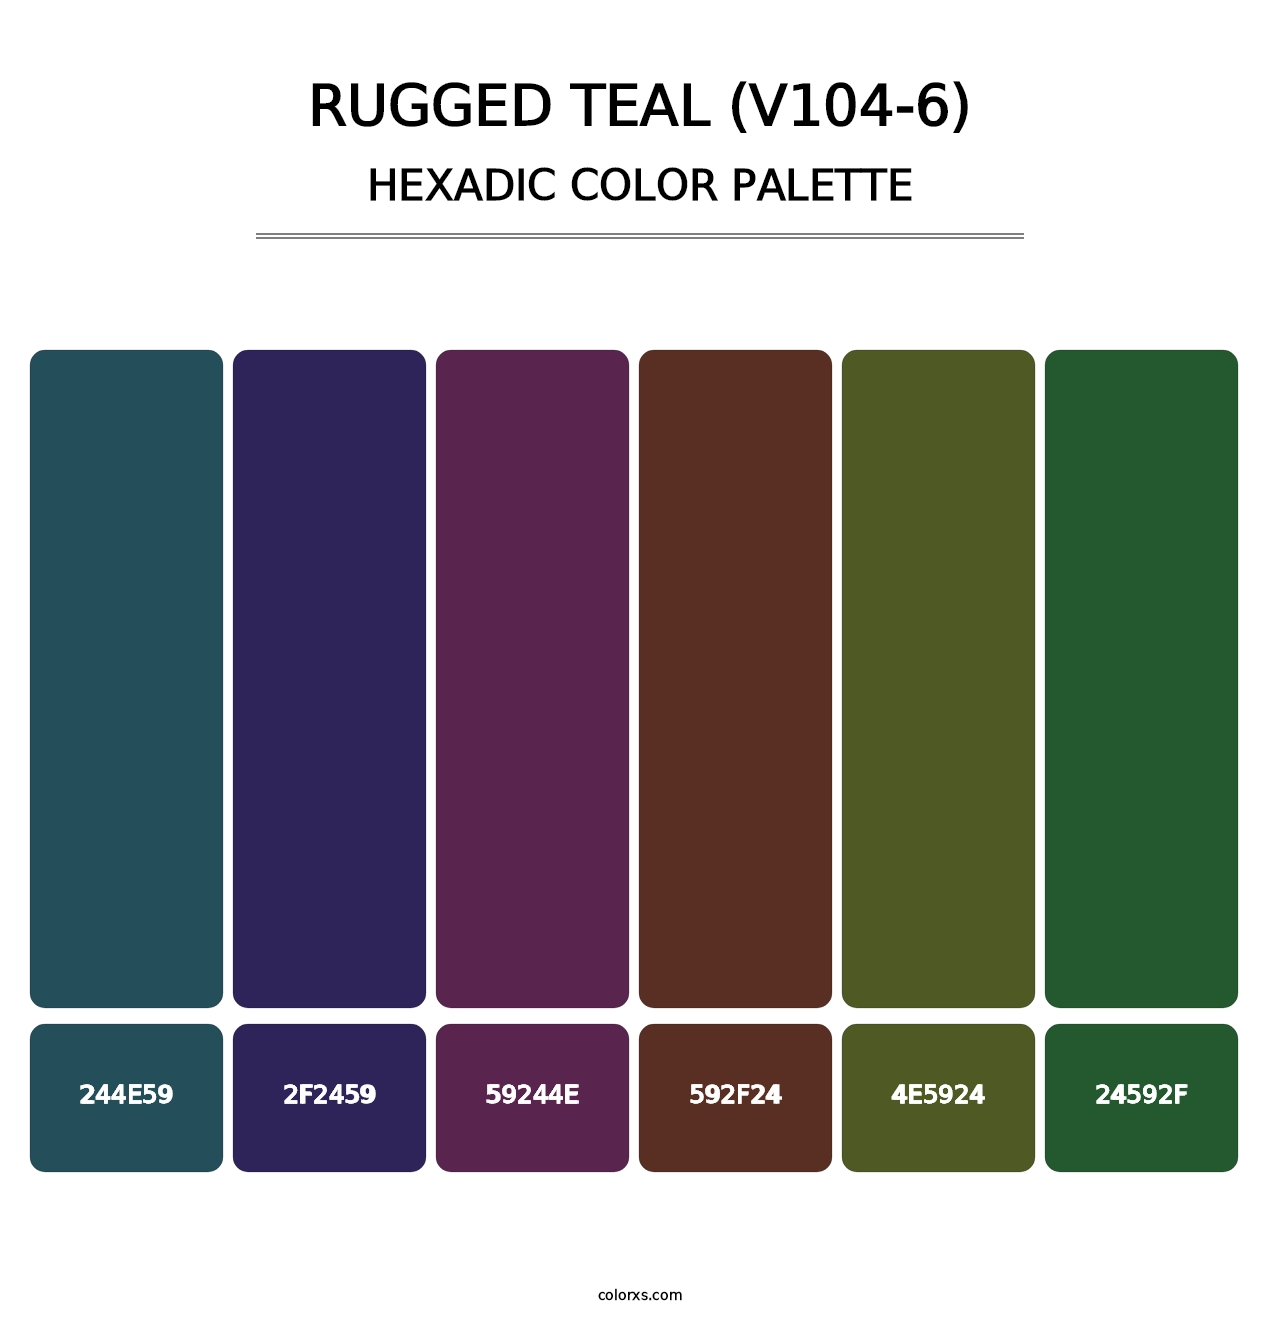 Rugged Teal (V104-6) - Hexadic Color Palette